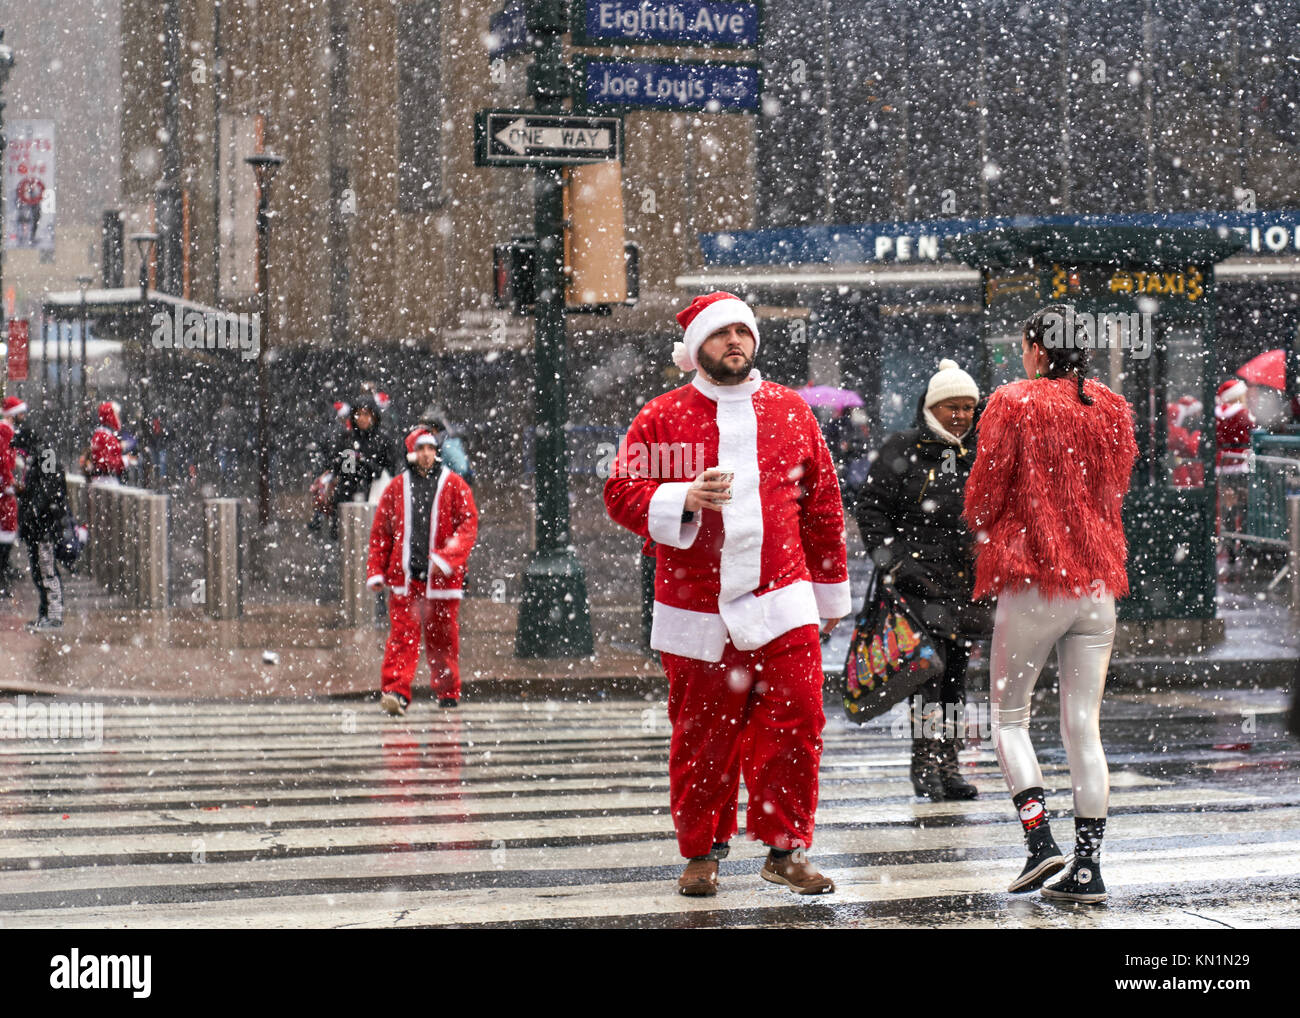 New York, Stati Uniti d'America, 9 Dic 2017. La gente vestita come Babbo Natale arriva per una festosa 'Santacon' folla raccolta sotto una tempesta di neve. Foto di Enrique Shore/Alamy Live News Foto Stock